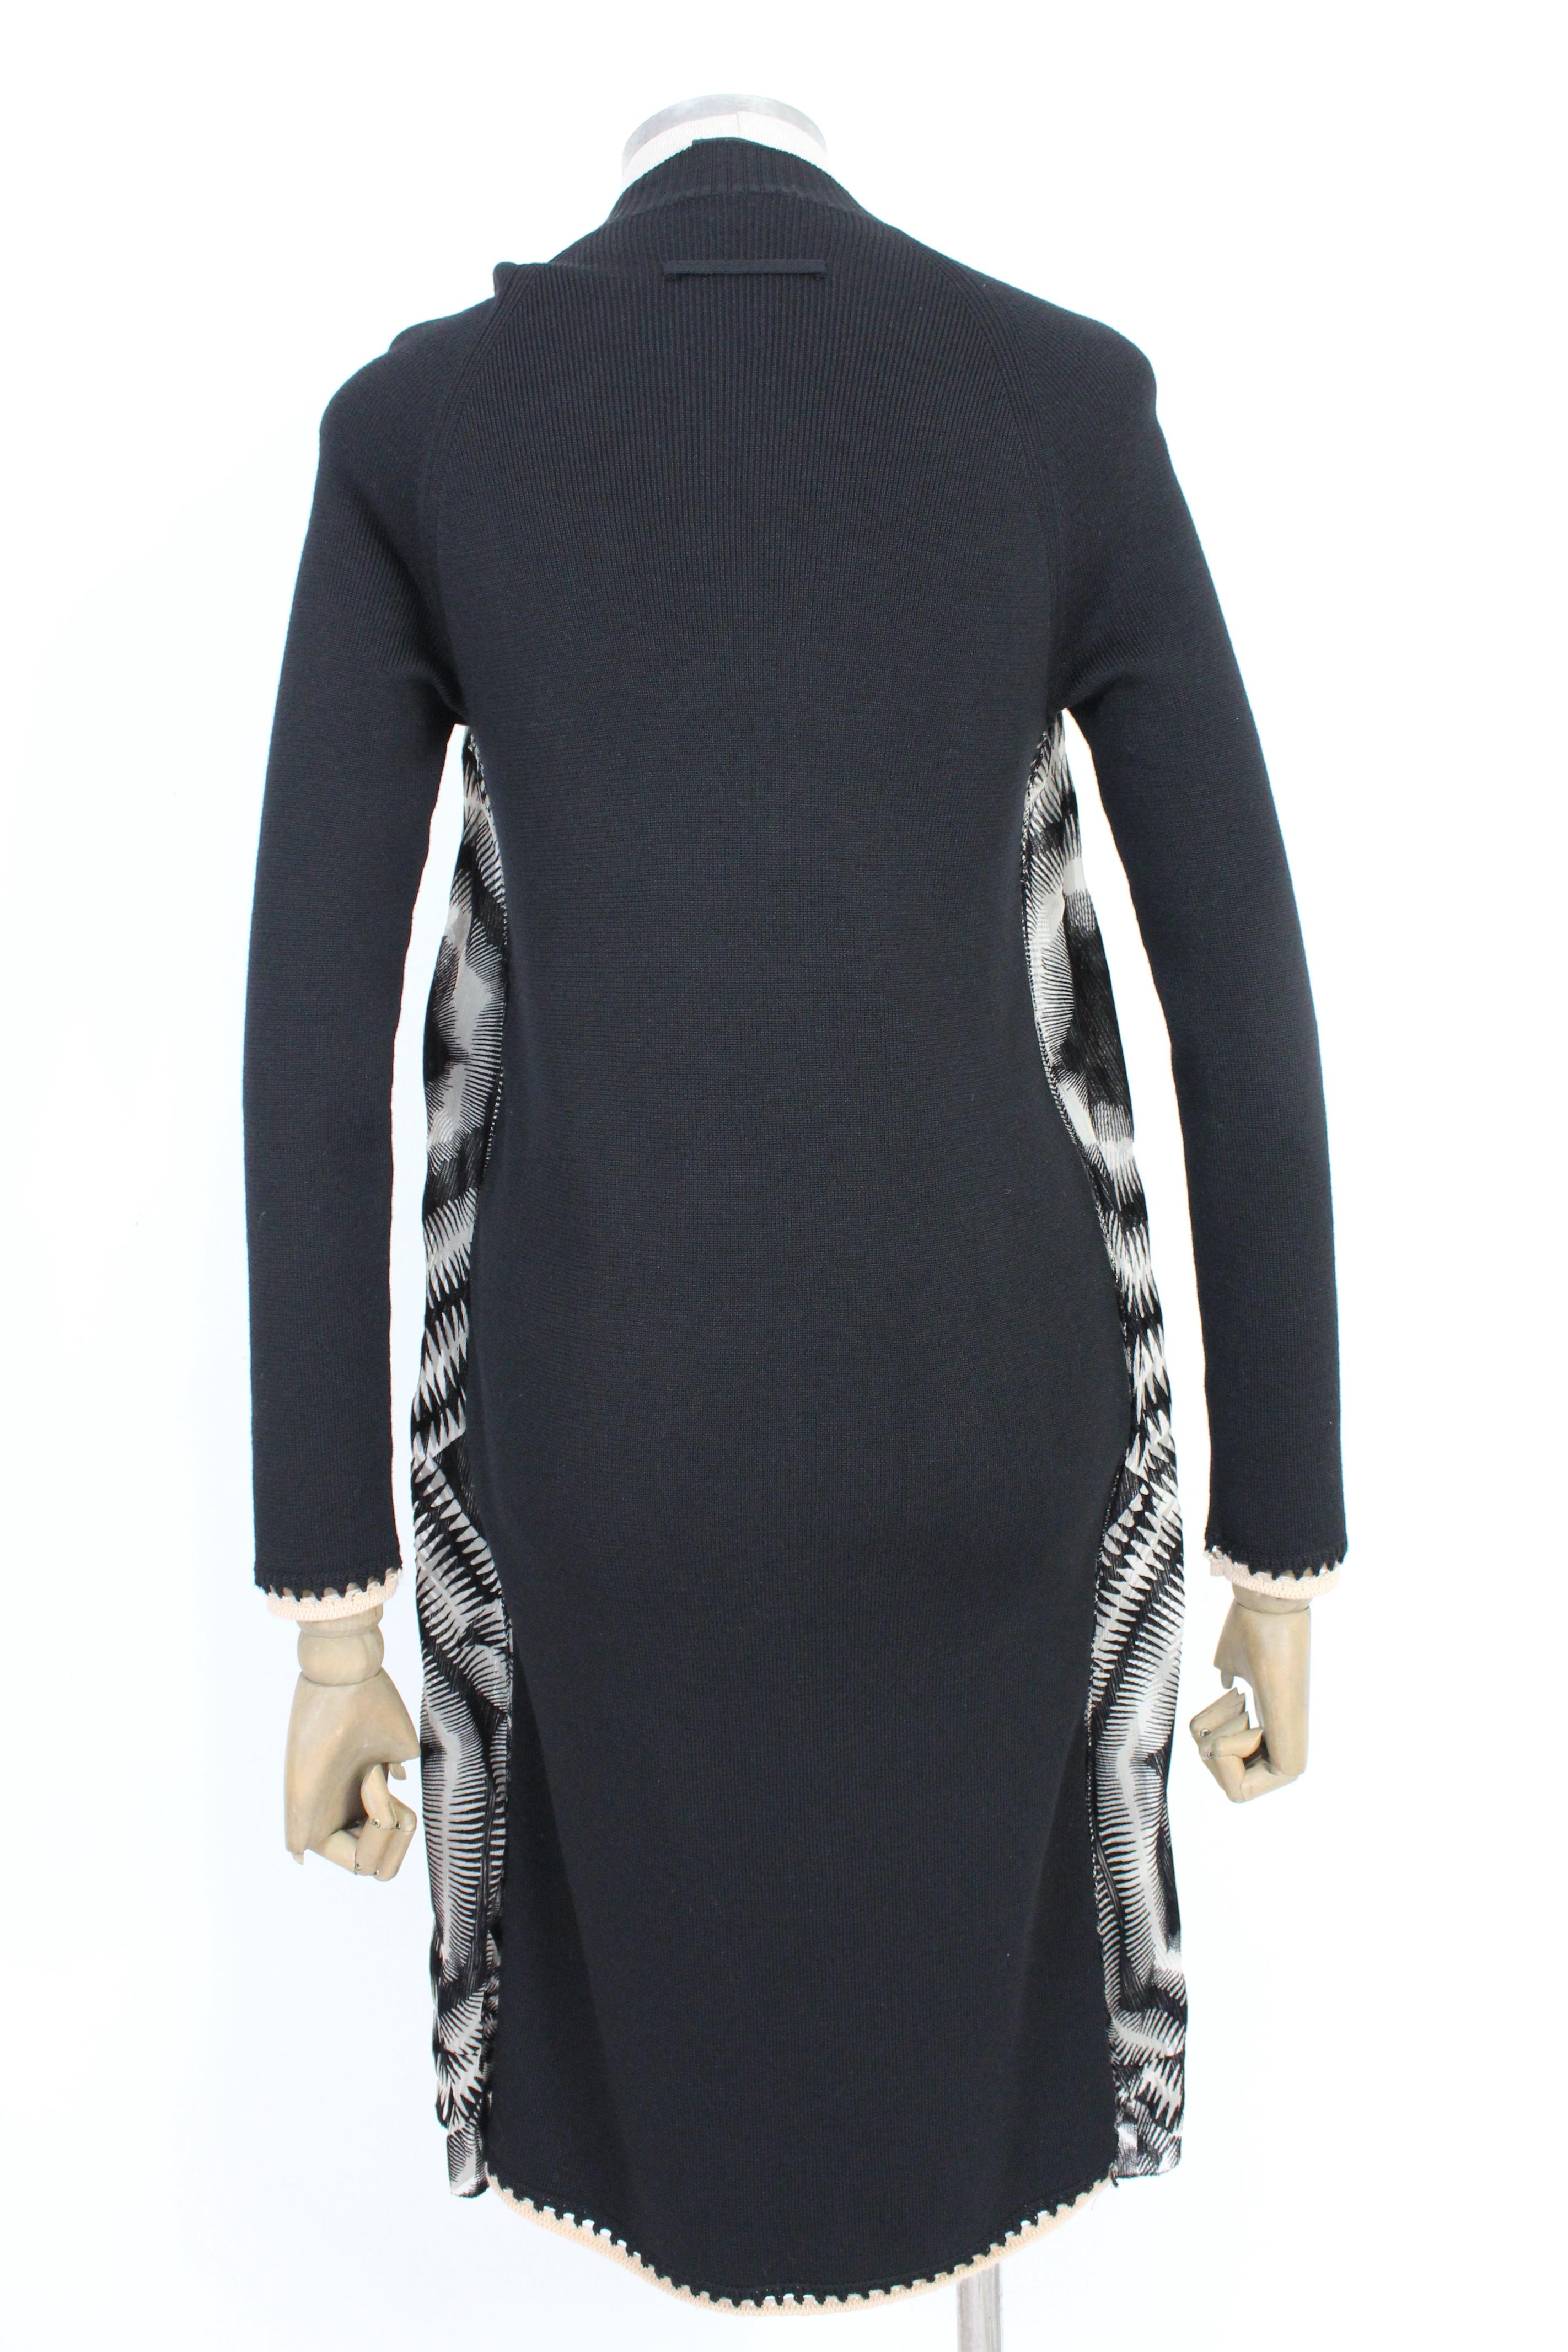 Jean Paul Gaultier Maille Kleid aus den 90ern. Kurzes schwarz-weißes Kleid mit psychedelischem Muster. Schultern und Ärmel aus Wolle, auf der Vorderseite aus Fuzzi-Micro-Mesh und Seide. Stoff 80% Wolle, 20% Seide, innen gefüttert. Hergestellt in